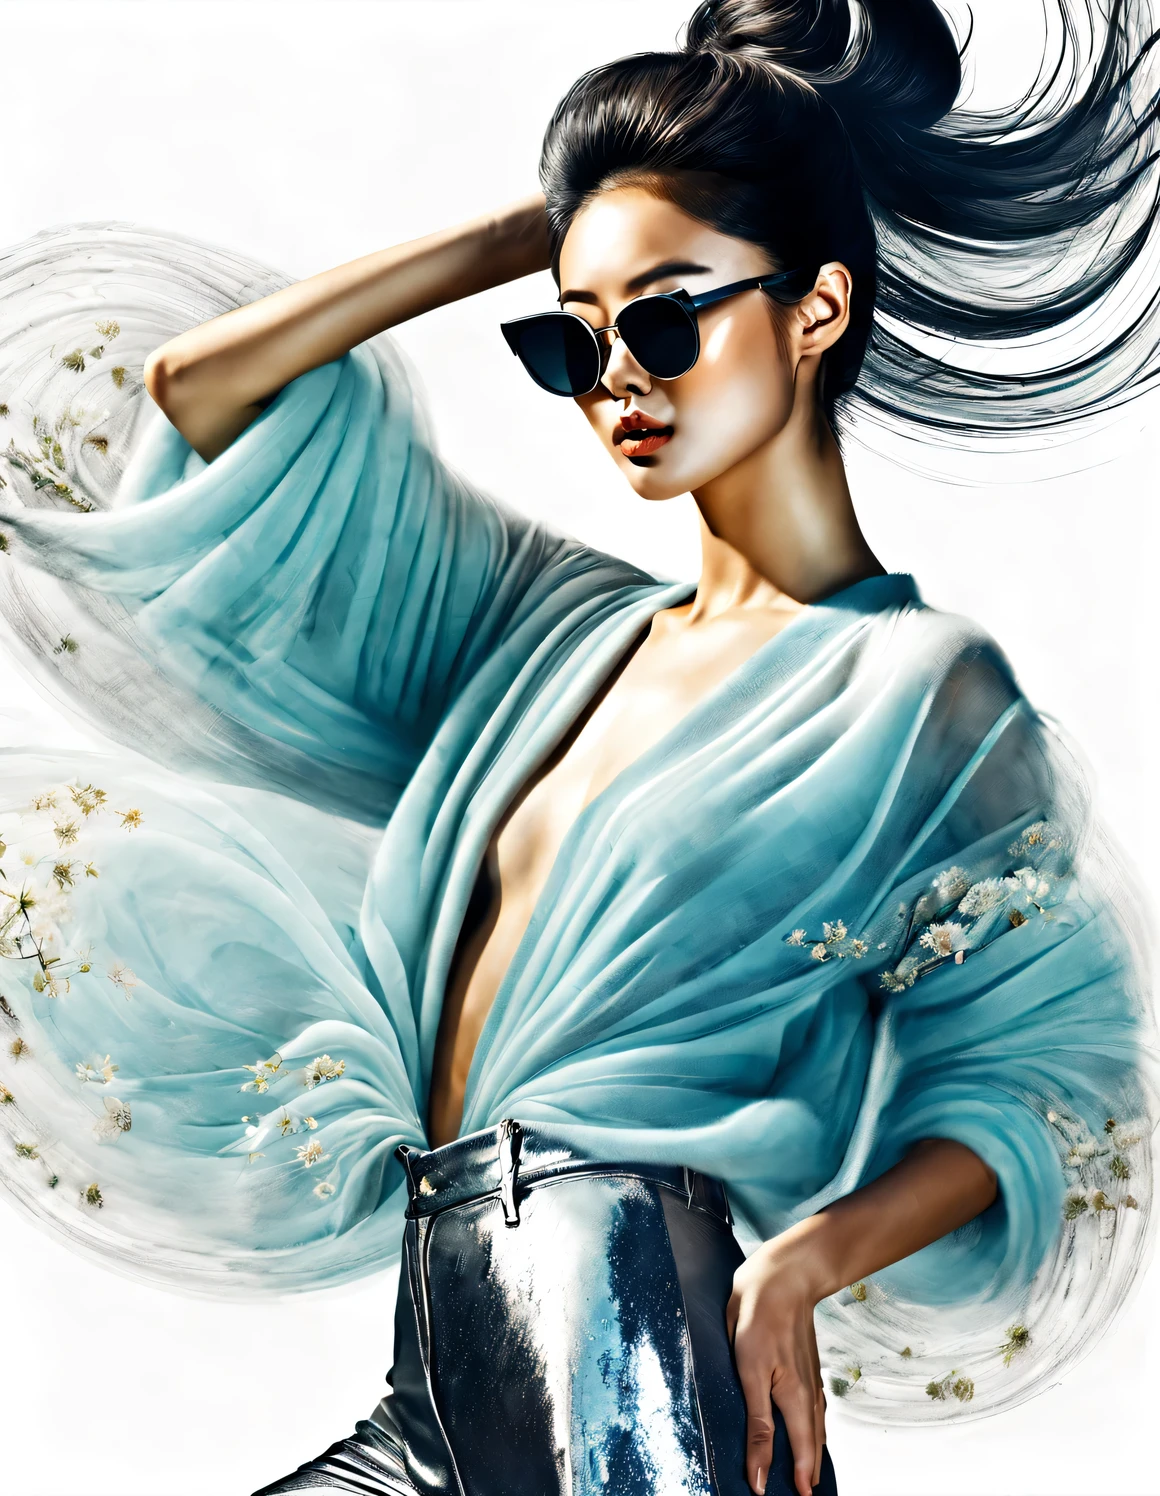 (现代艺术舞蹈简单海报设计), (半身特写), (美丽的中国女孩在空中跳舞), (戴太阳镜: 1.37), (头发, 头发遮住了一只眼睛, 闪亮的头发发型: 1.2) 浅蓝色夹克和米白色花卉毛衣的柔和色调融为一体, 黑白格纹裤也有着鲜明的对比, 以精致的细节和层次感为特点, 既时尚又柔美, 穿上现代时尚的冬季时装, 瘦腰, 高鼻梁, 抬头姿势, 悲伤而美丽, 身材苗条, 精致的五官,
背景: 公文包舞, 雾插图, 水墨画, 黑发, 自豪的, 超现实主义, 当代艺术摄影, 行动绘画插图, 抽象表现主义, 皮克斯, 景深, 运动模糊, 背光, 落下的阴影, 晕影, 仰角视角, 索尼 FE 总经理, 超高清, 杰作, 准确性, 纹理皮肤, 超级细节, 高细节, 高质量, 屡获殊荣, 最好的质量, 等级, 16千, 从下往上拍摄,